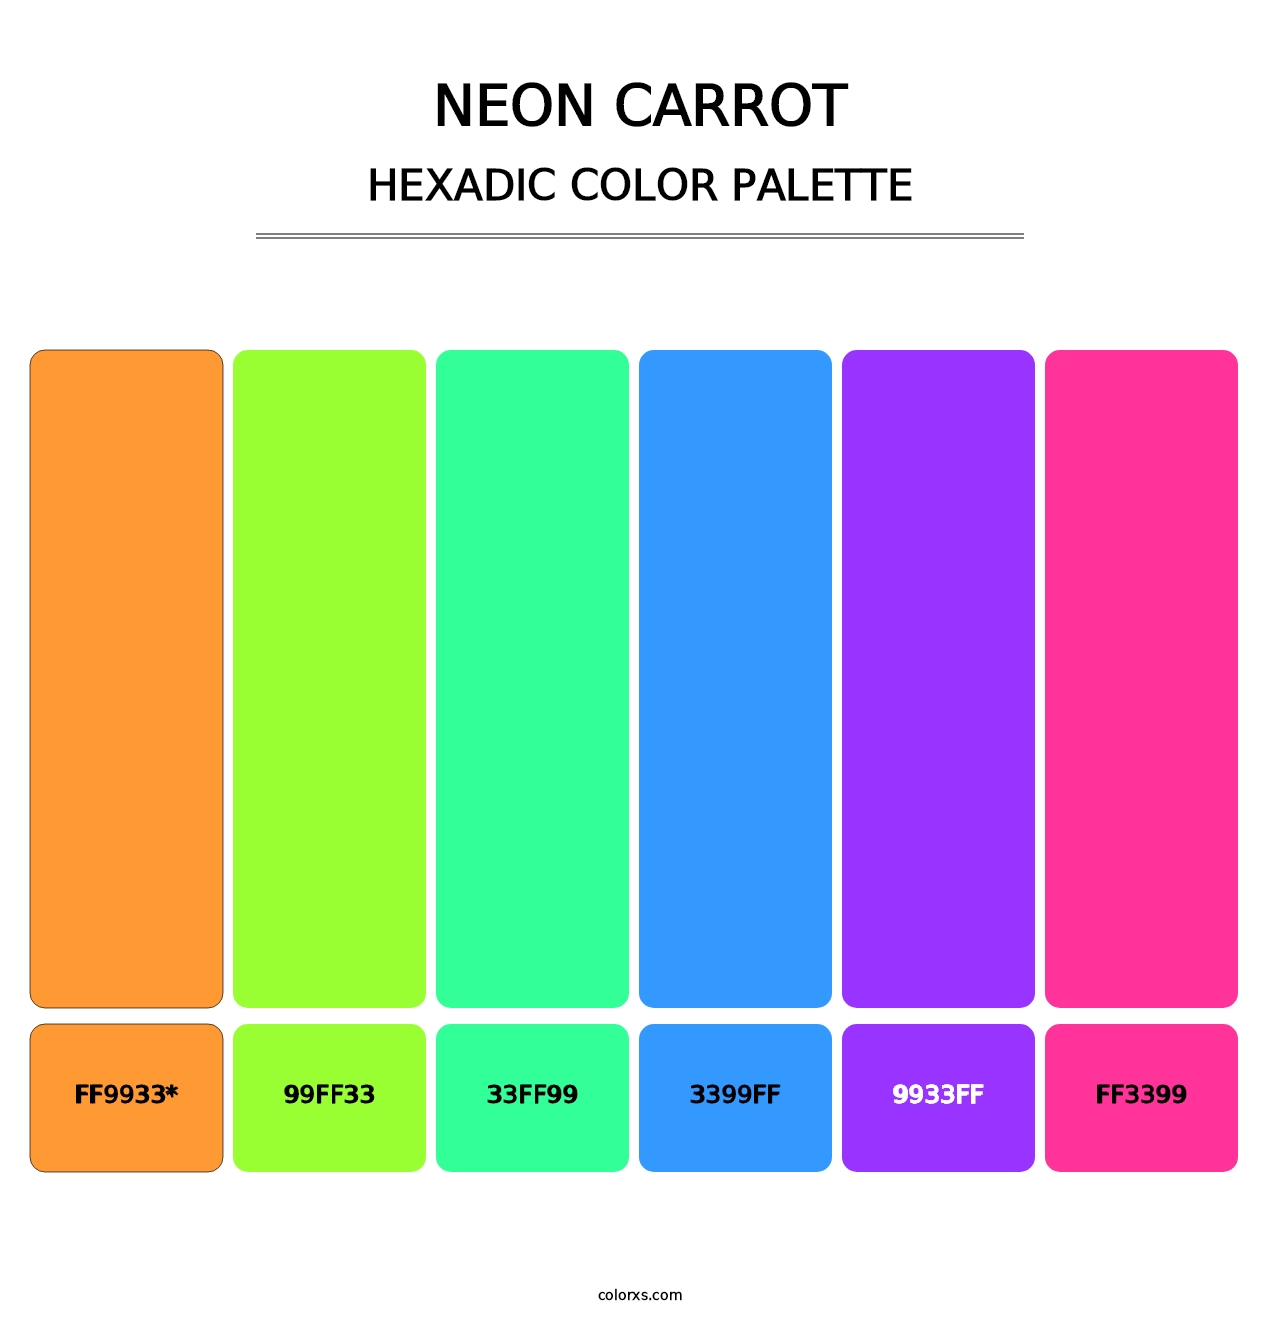 Neon Carrot - Hexadic Color Palette